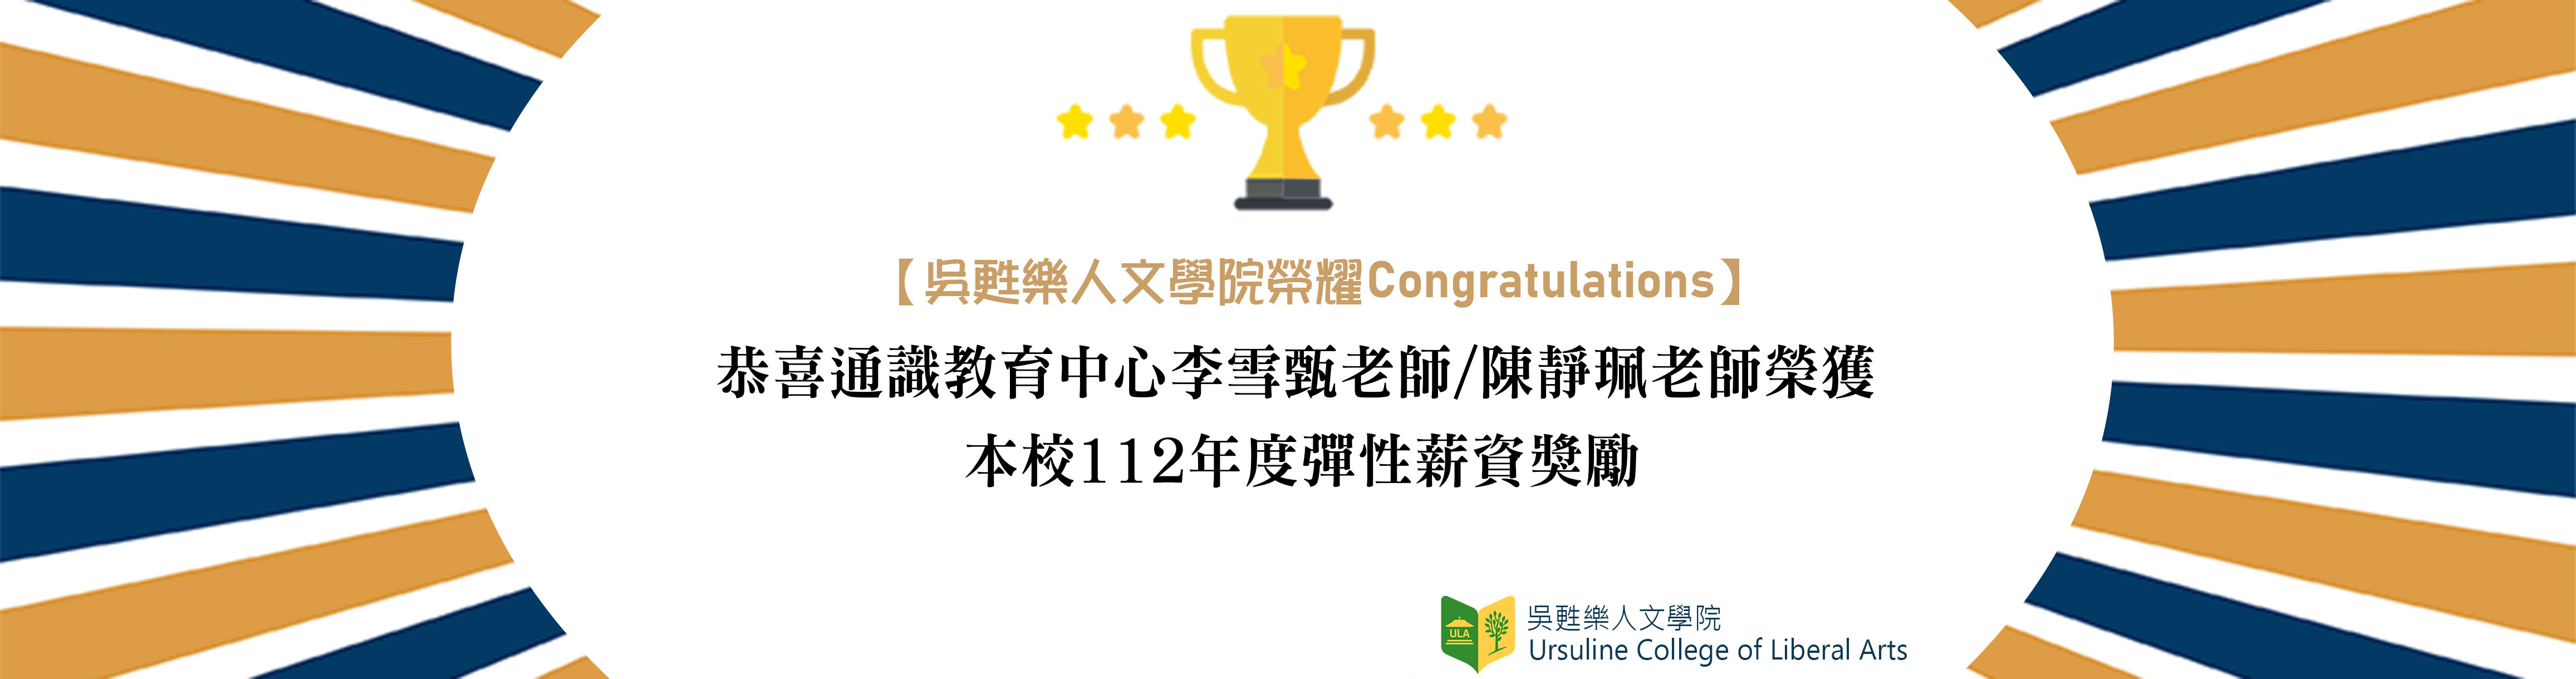 【恭賀】吳甦樂人文學院教師榮獲本校112年度彈性薪資獎勵(另開新視窗)